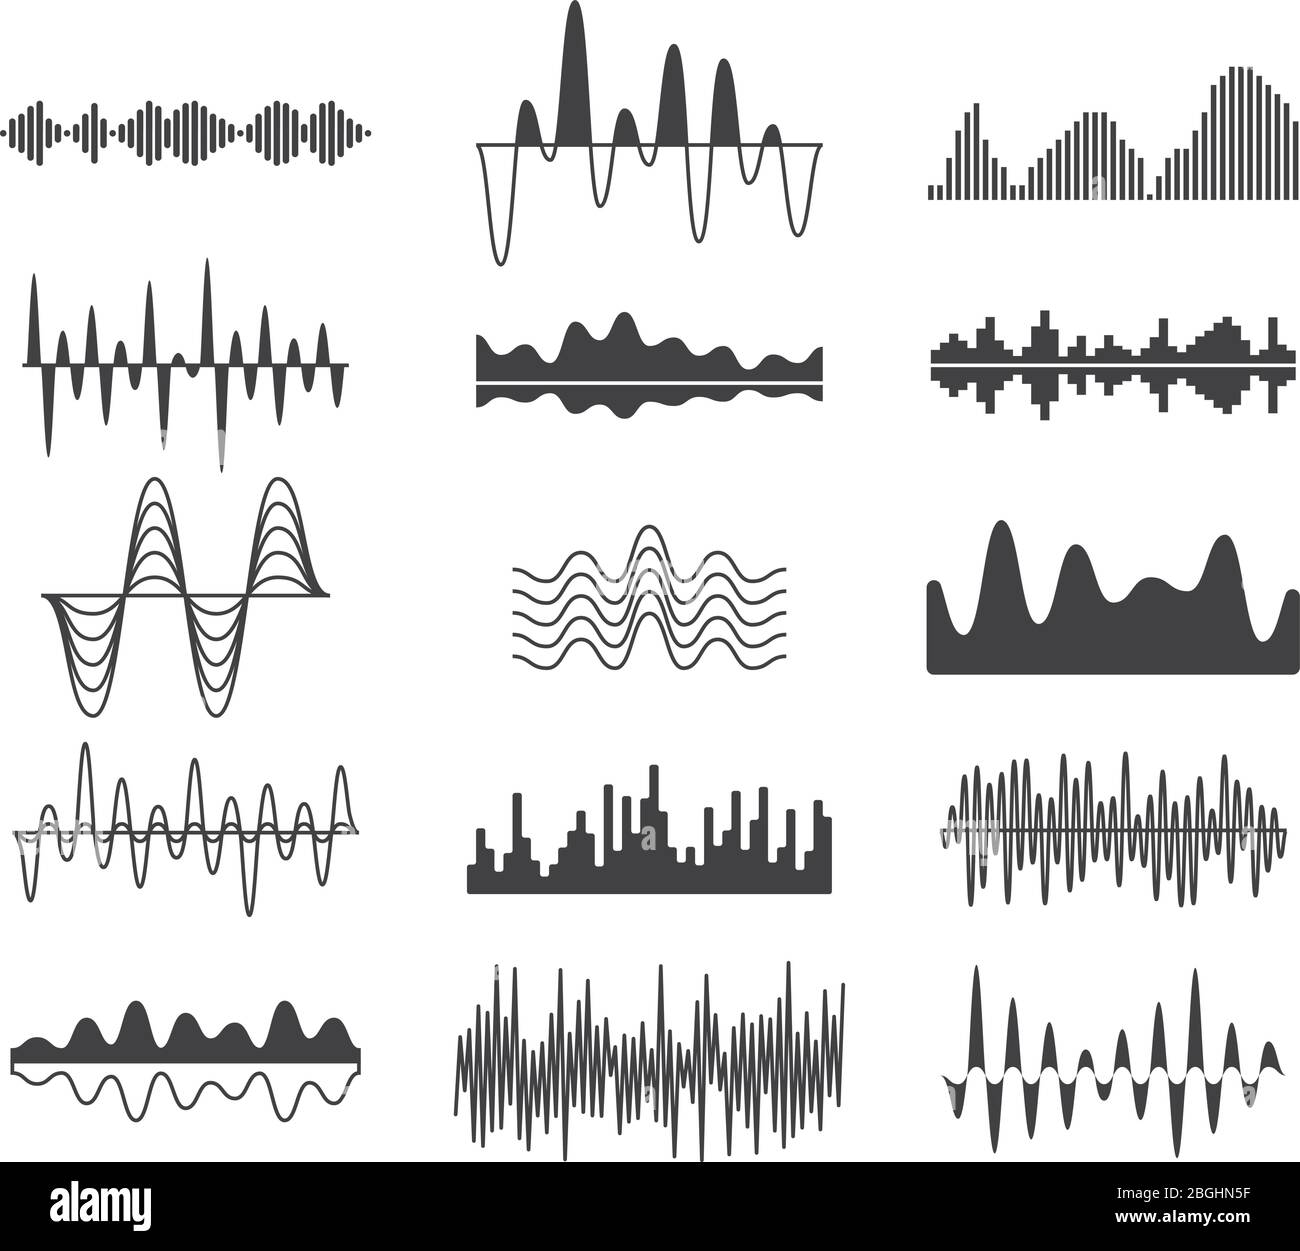 Ondas de frecuencia de sonido. Símbolos de señal analógica curva. Se forma  el ecualizador de música de pista de audio, se establece el vector de  señales de ondas sonoras. Ilustración del ecualizador